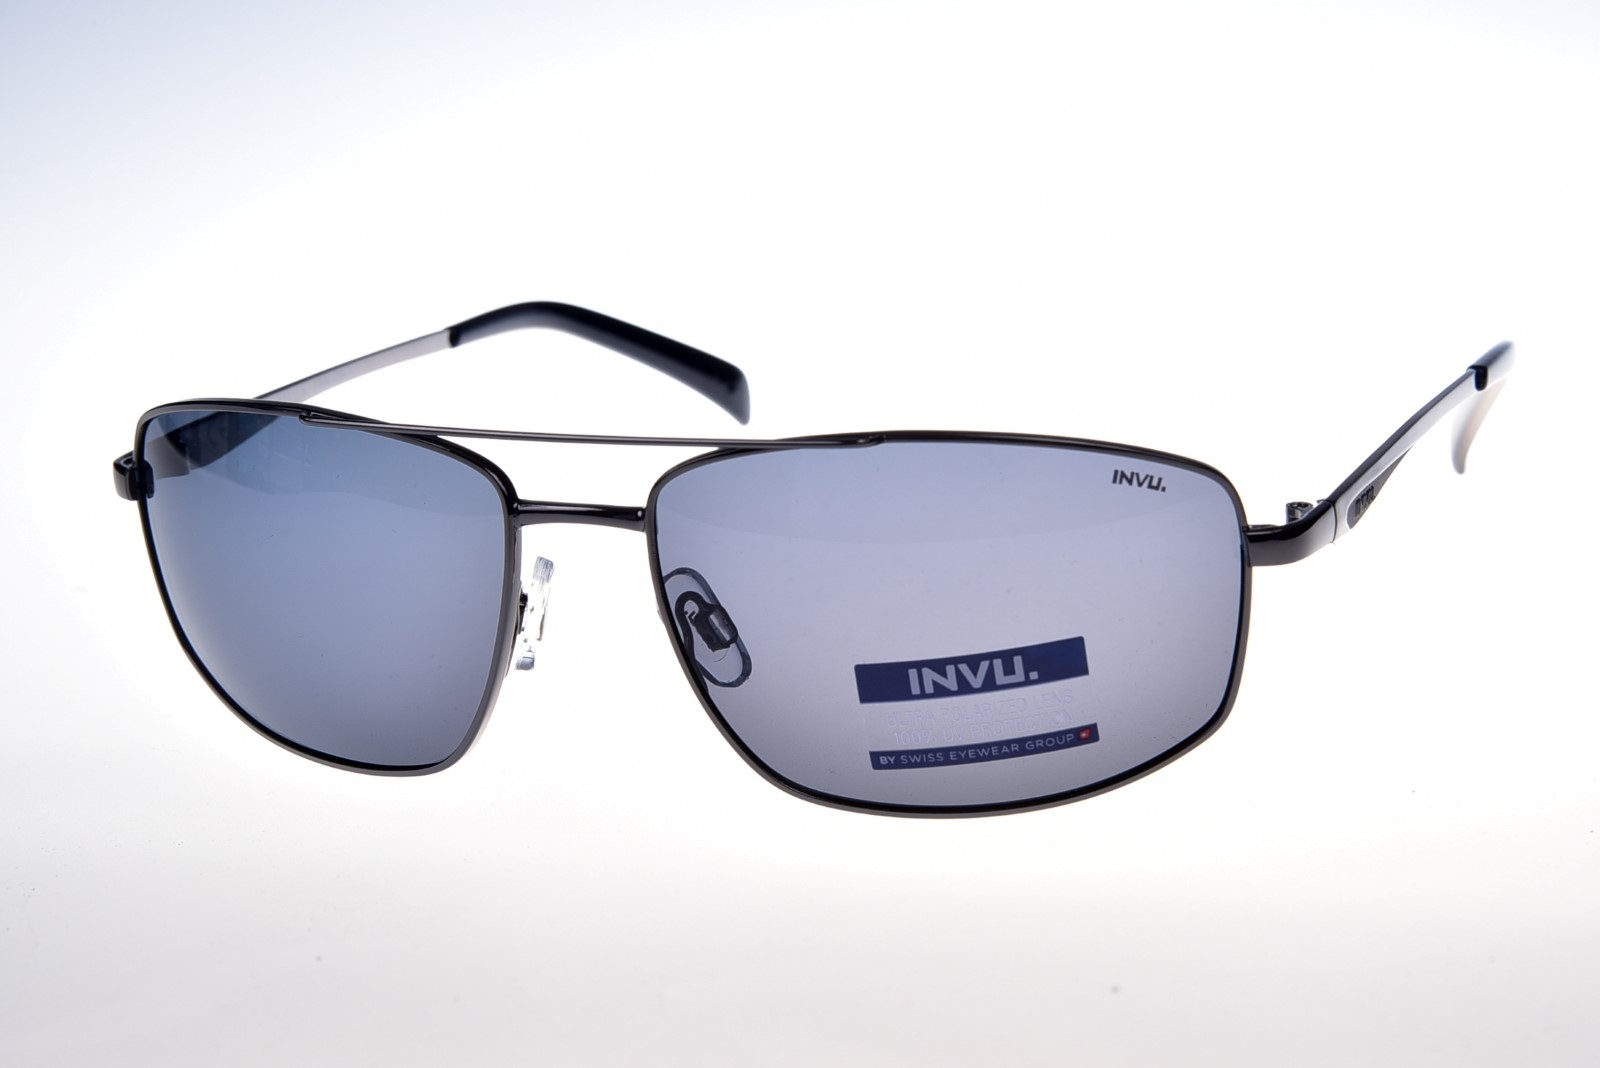 INVU. B1011A - Pánske slnečné okuliare